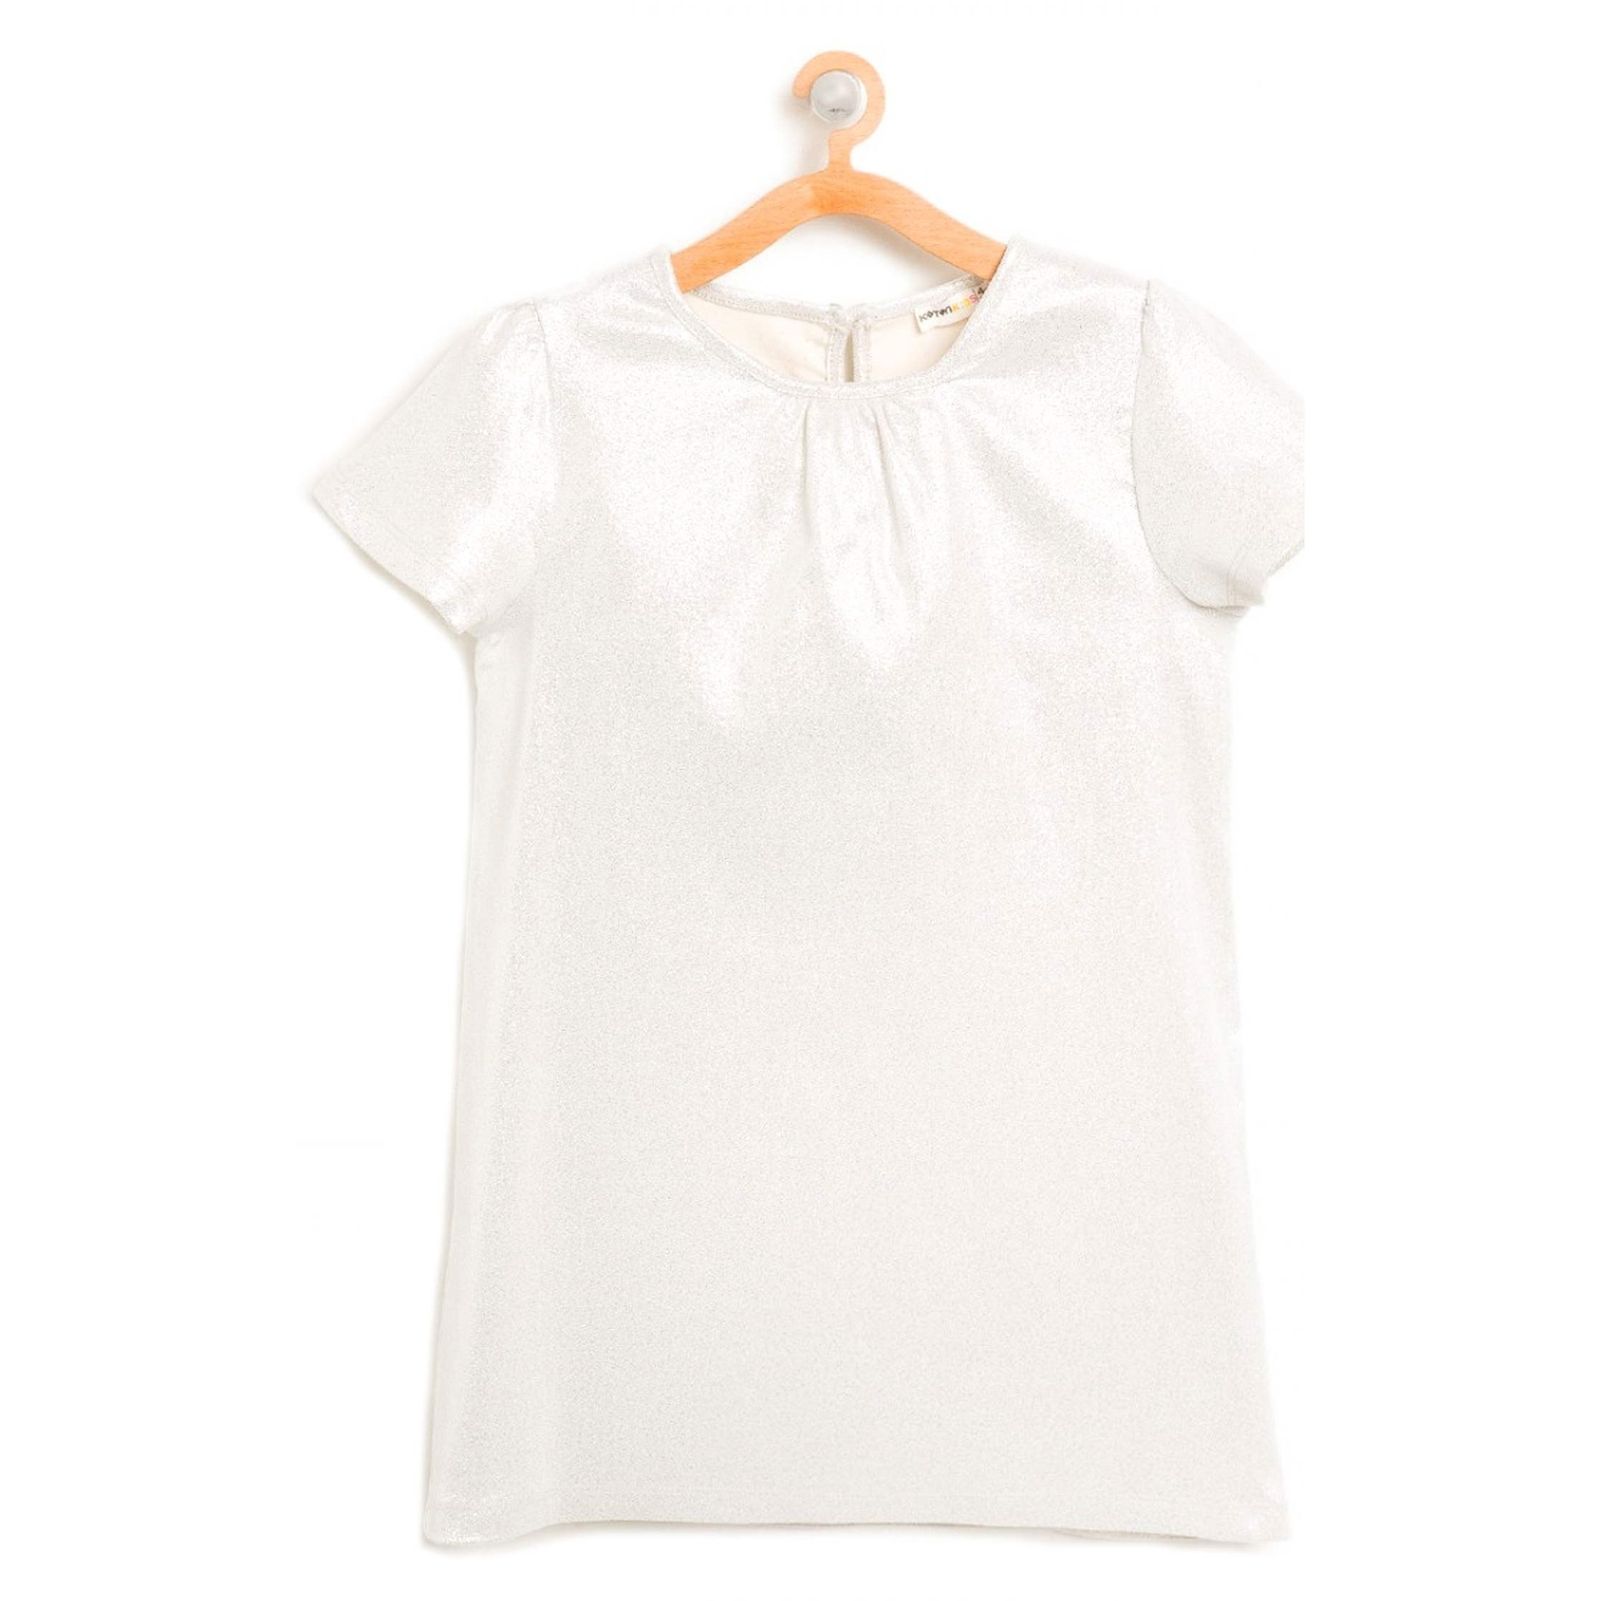 پیراهن روزمره دخترانه - کوتون - طوسي روشن - 2